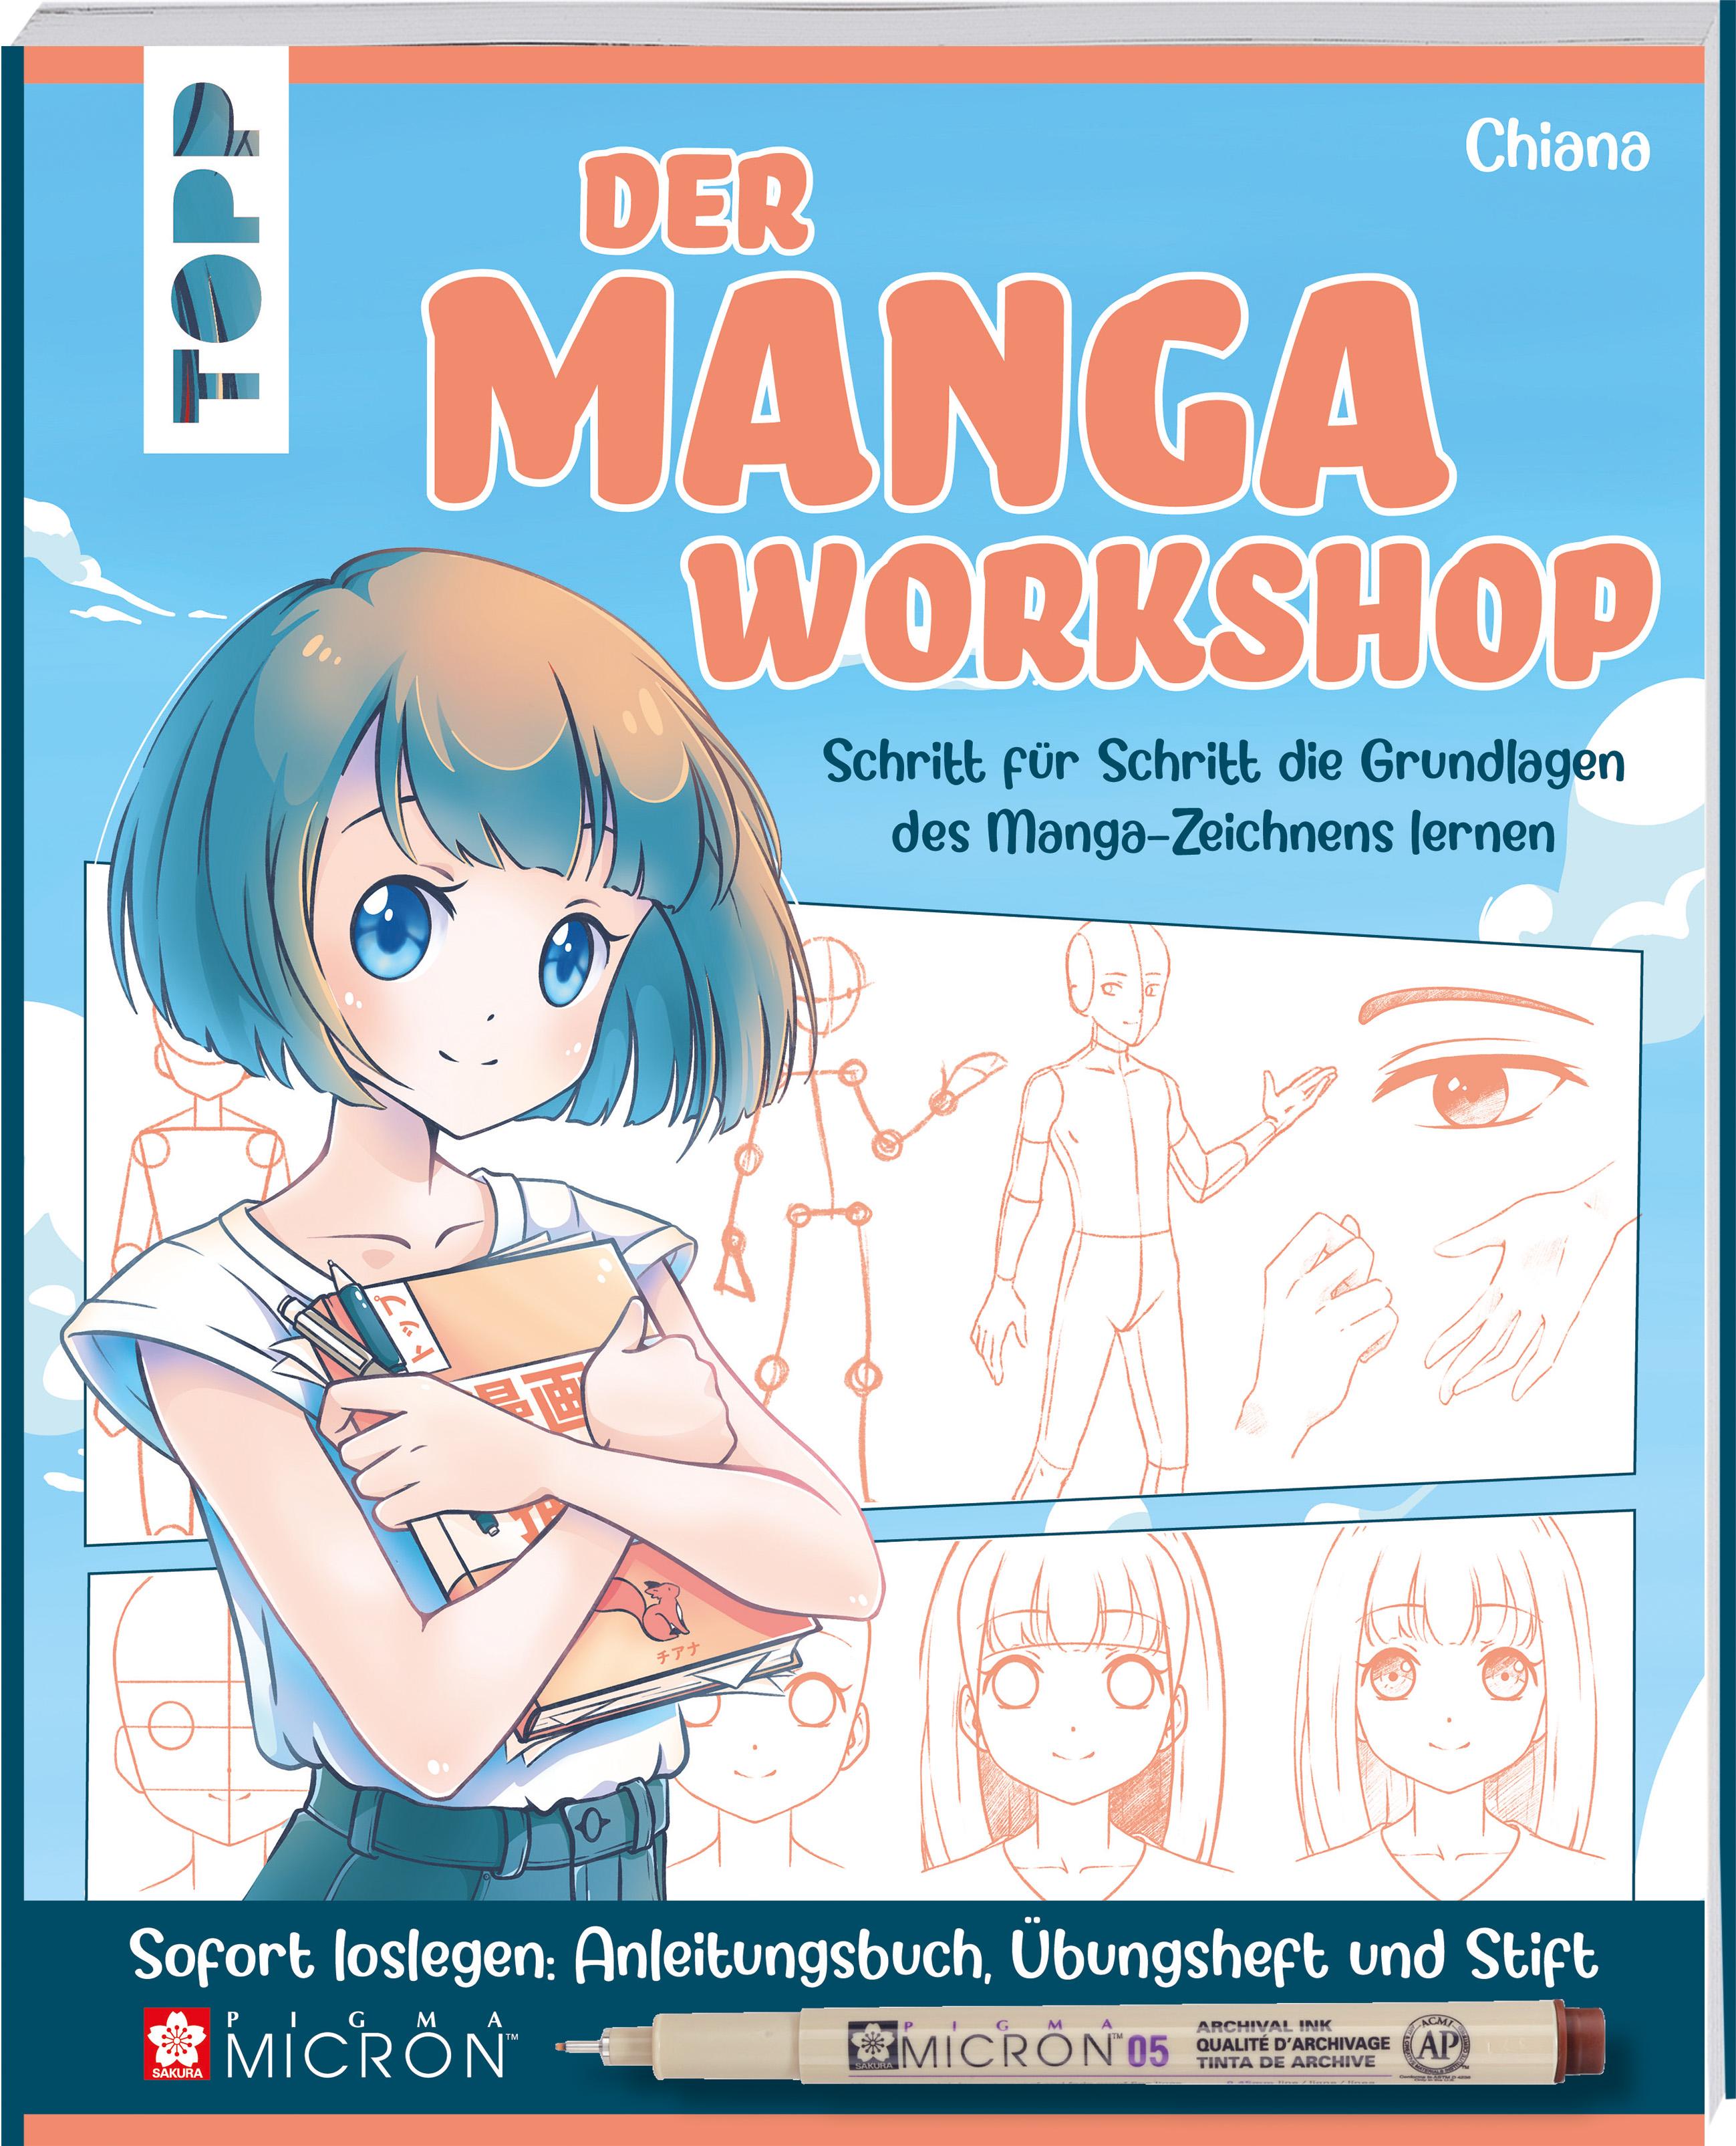 Der Manga-Workshop - Grundlagen des Manga-Zeichnens lernen Mit Anleitungsbuch, Übungsheft und Original-Stift Pigma Micron von Sakura sofort loslegen